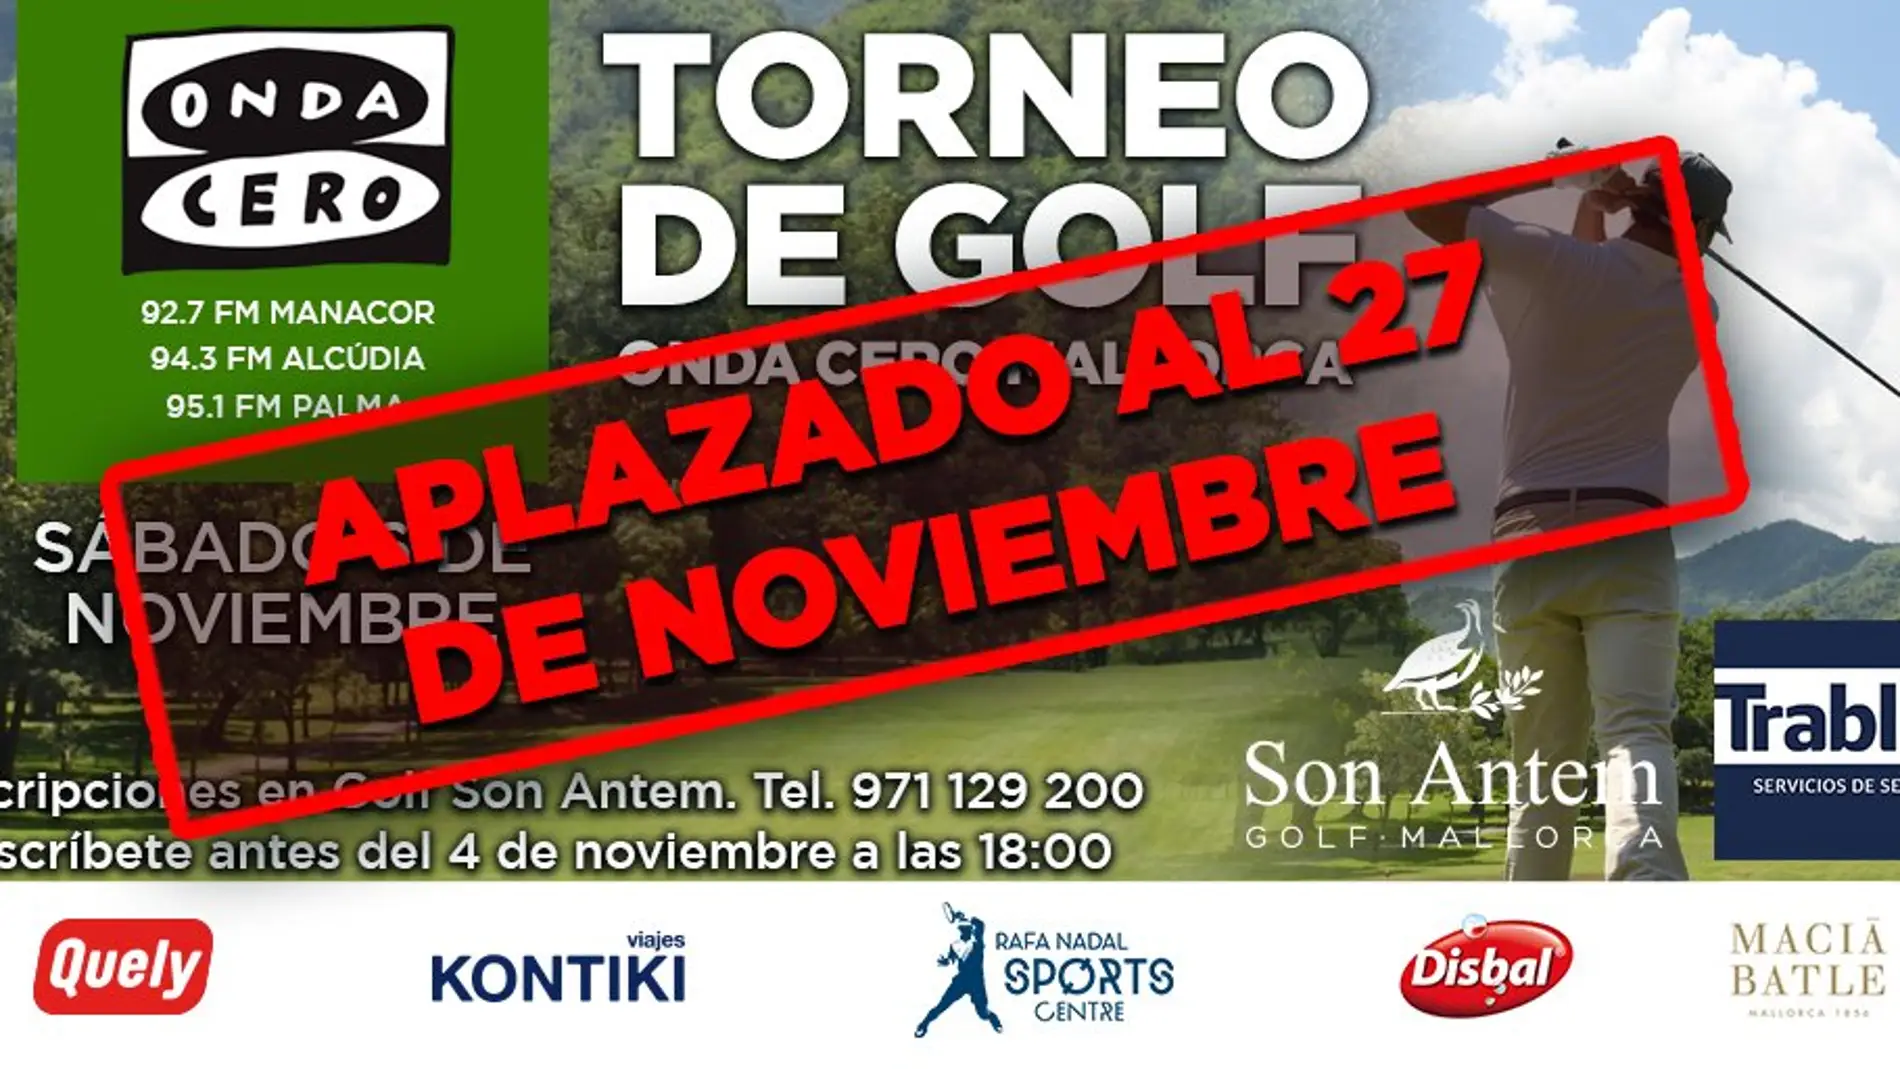 Aplazado el torneo de Golf de Onda Cero Mallorca al 27 de noviembre